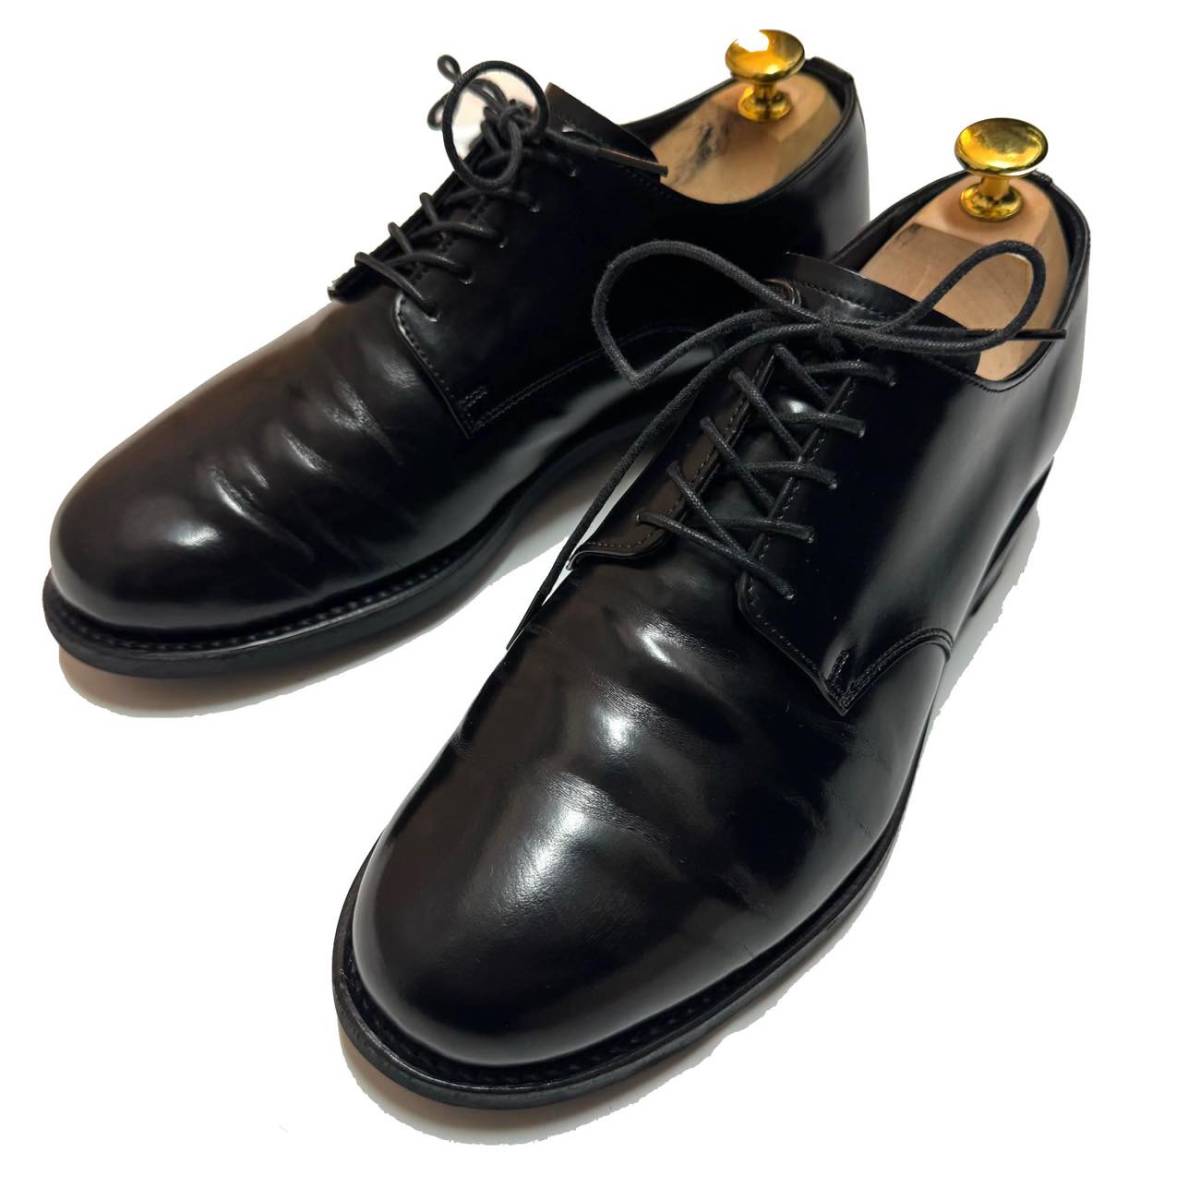 ATTACHMENT Attachment h.arai collaboration plain tu leather shoes regular price 60,500 jpy 7(25cm degree ) men's short shoes kazyuki bear gai... history 